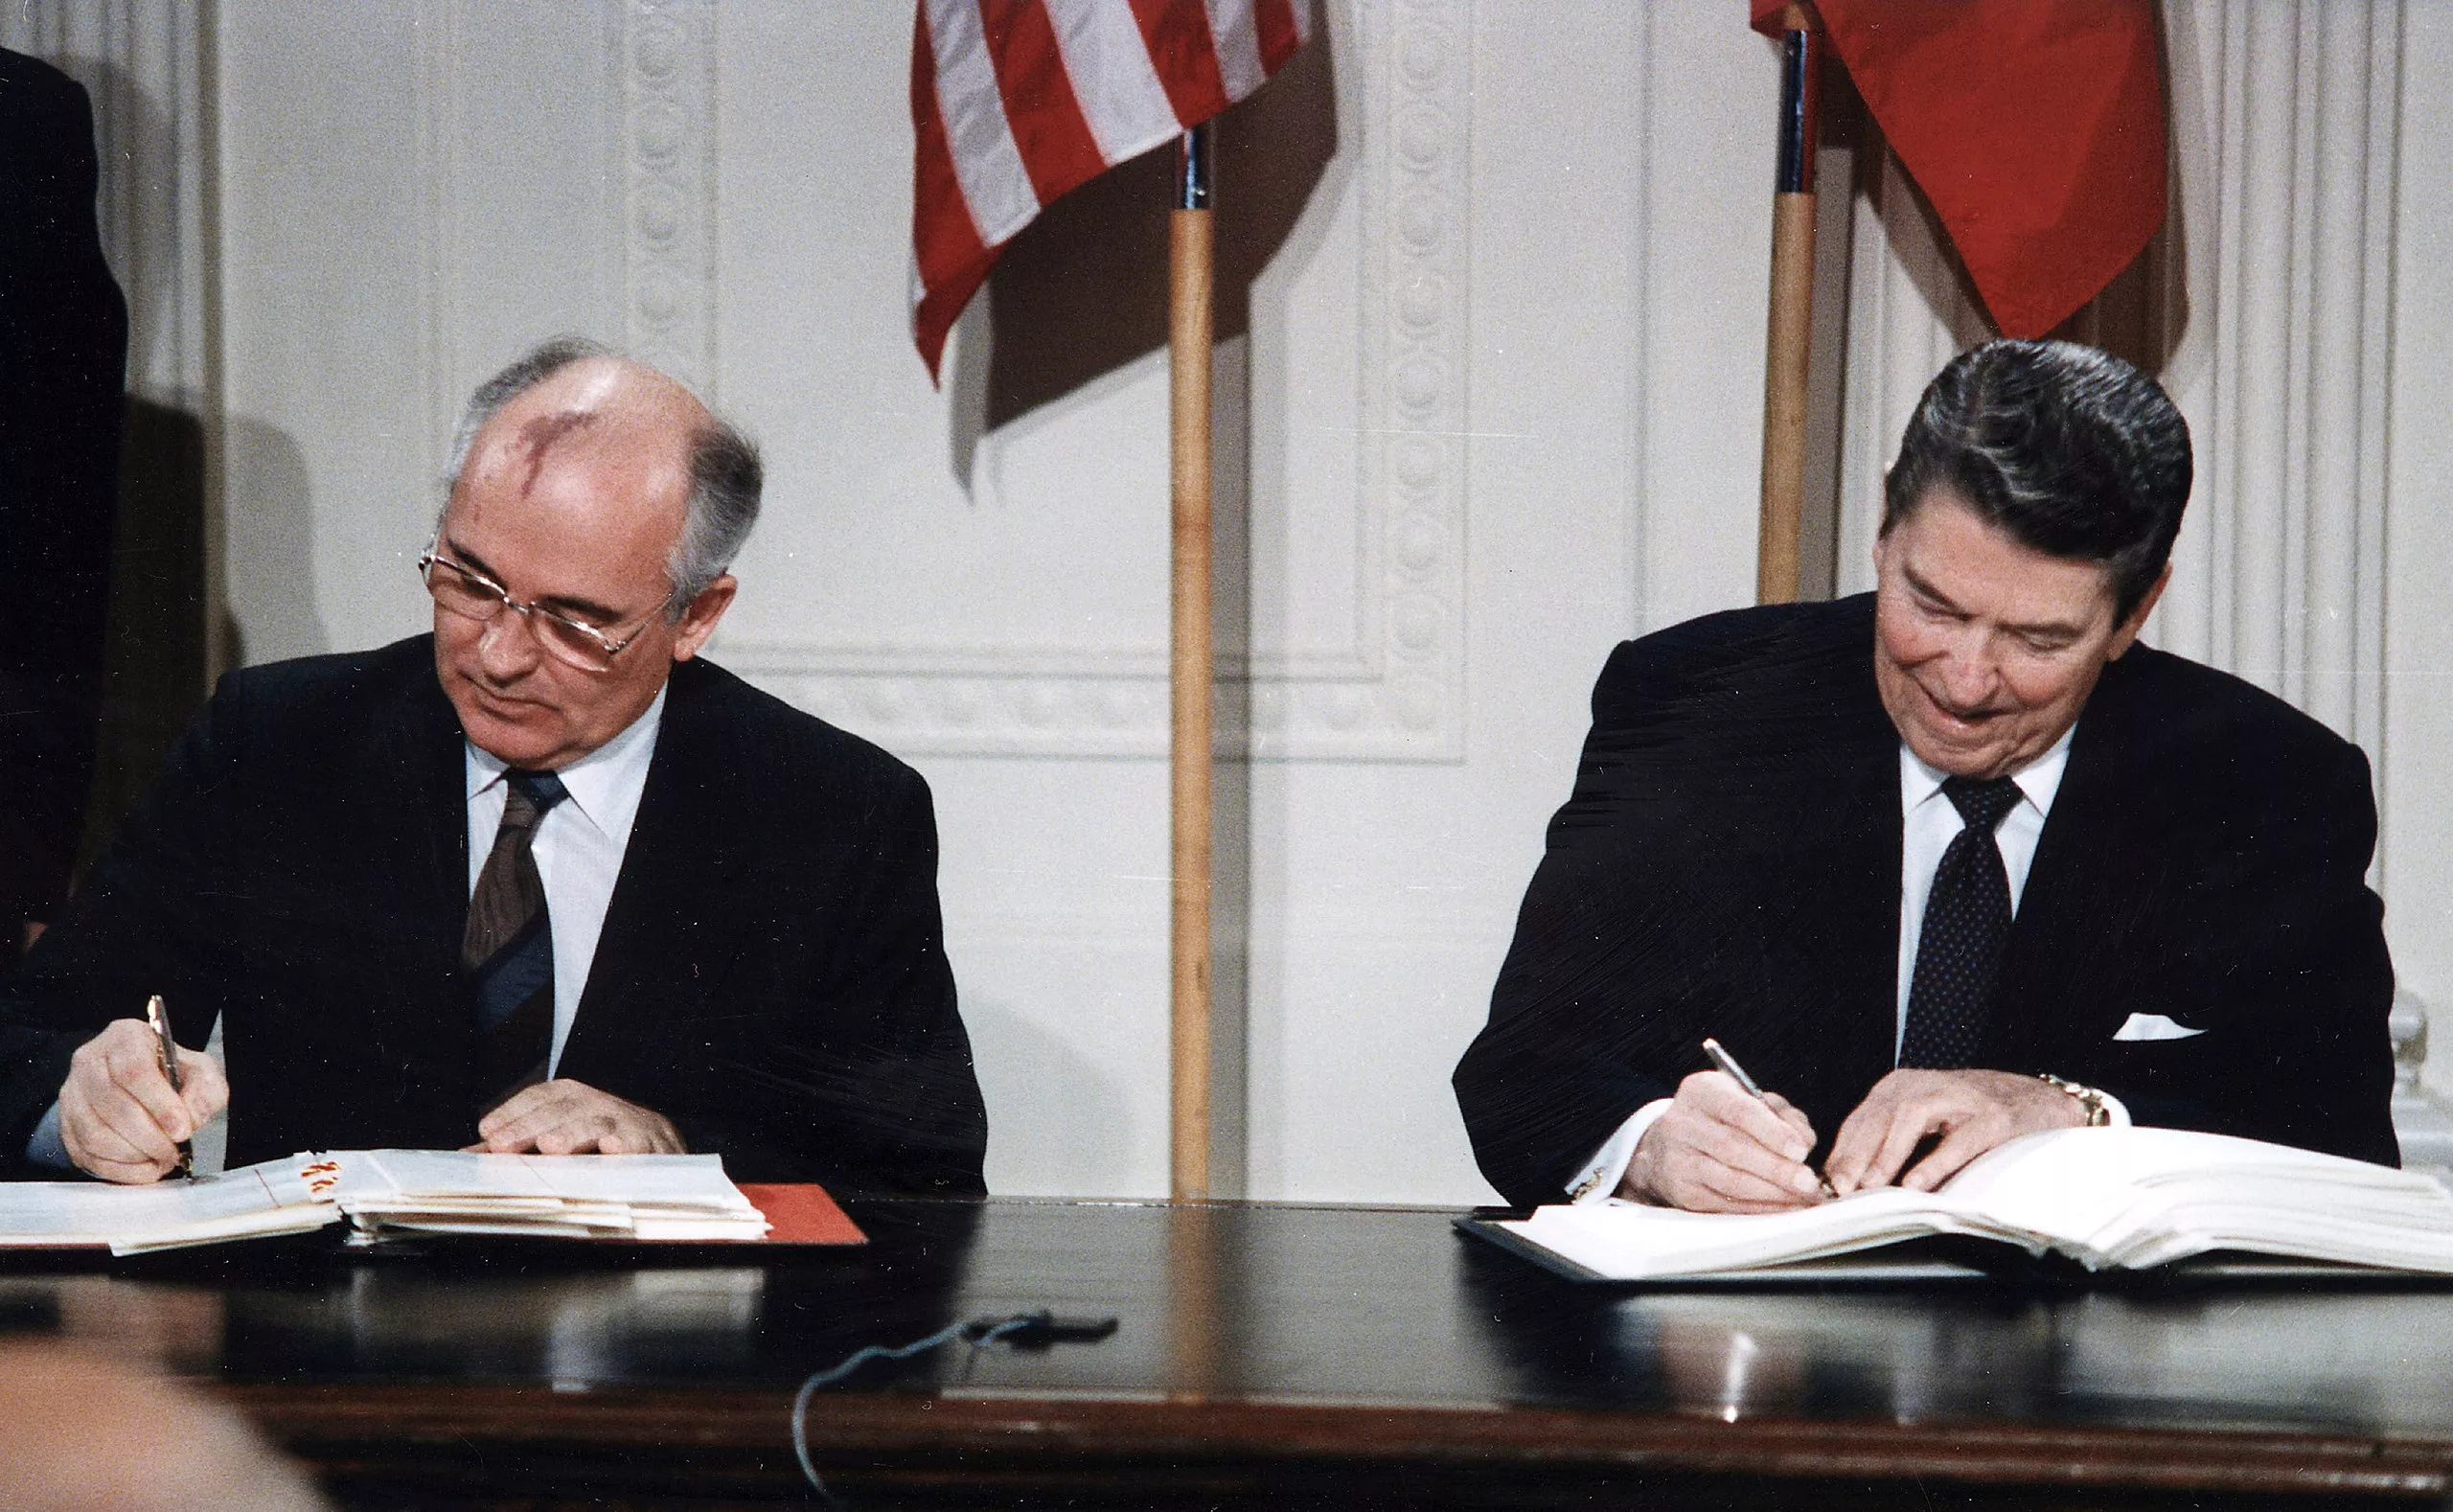 El primer senyal de desglaç va ser un tractat amb els EUA per eradicar míssils, el segon va ser la retirada de l’Exèrcit Roig de l’Afganistan i el replegament de tropes soviètiques de l’Europa oriental